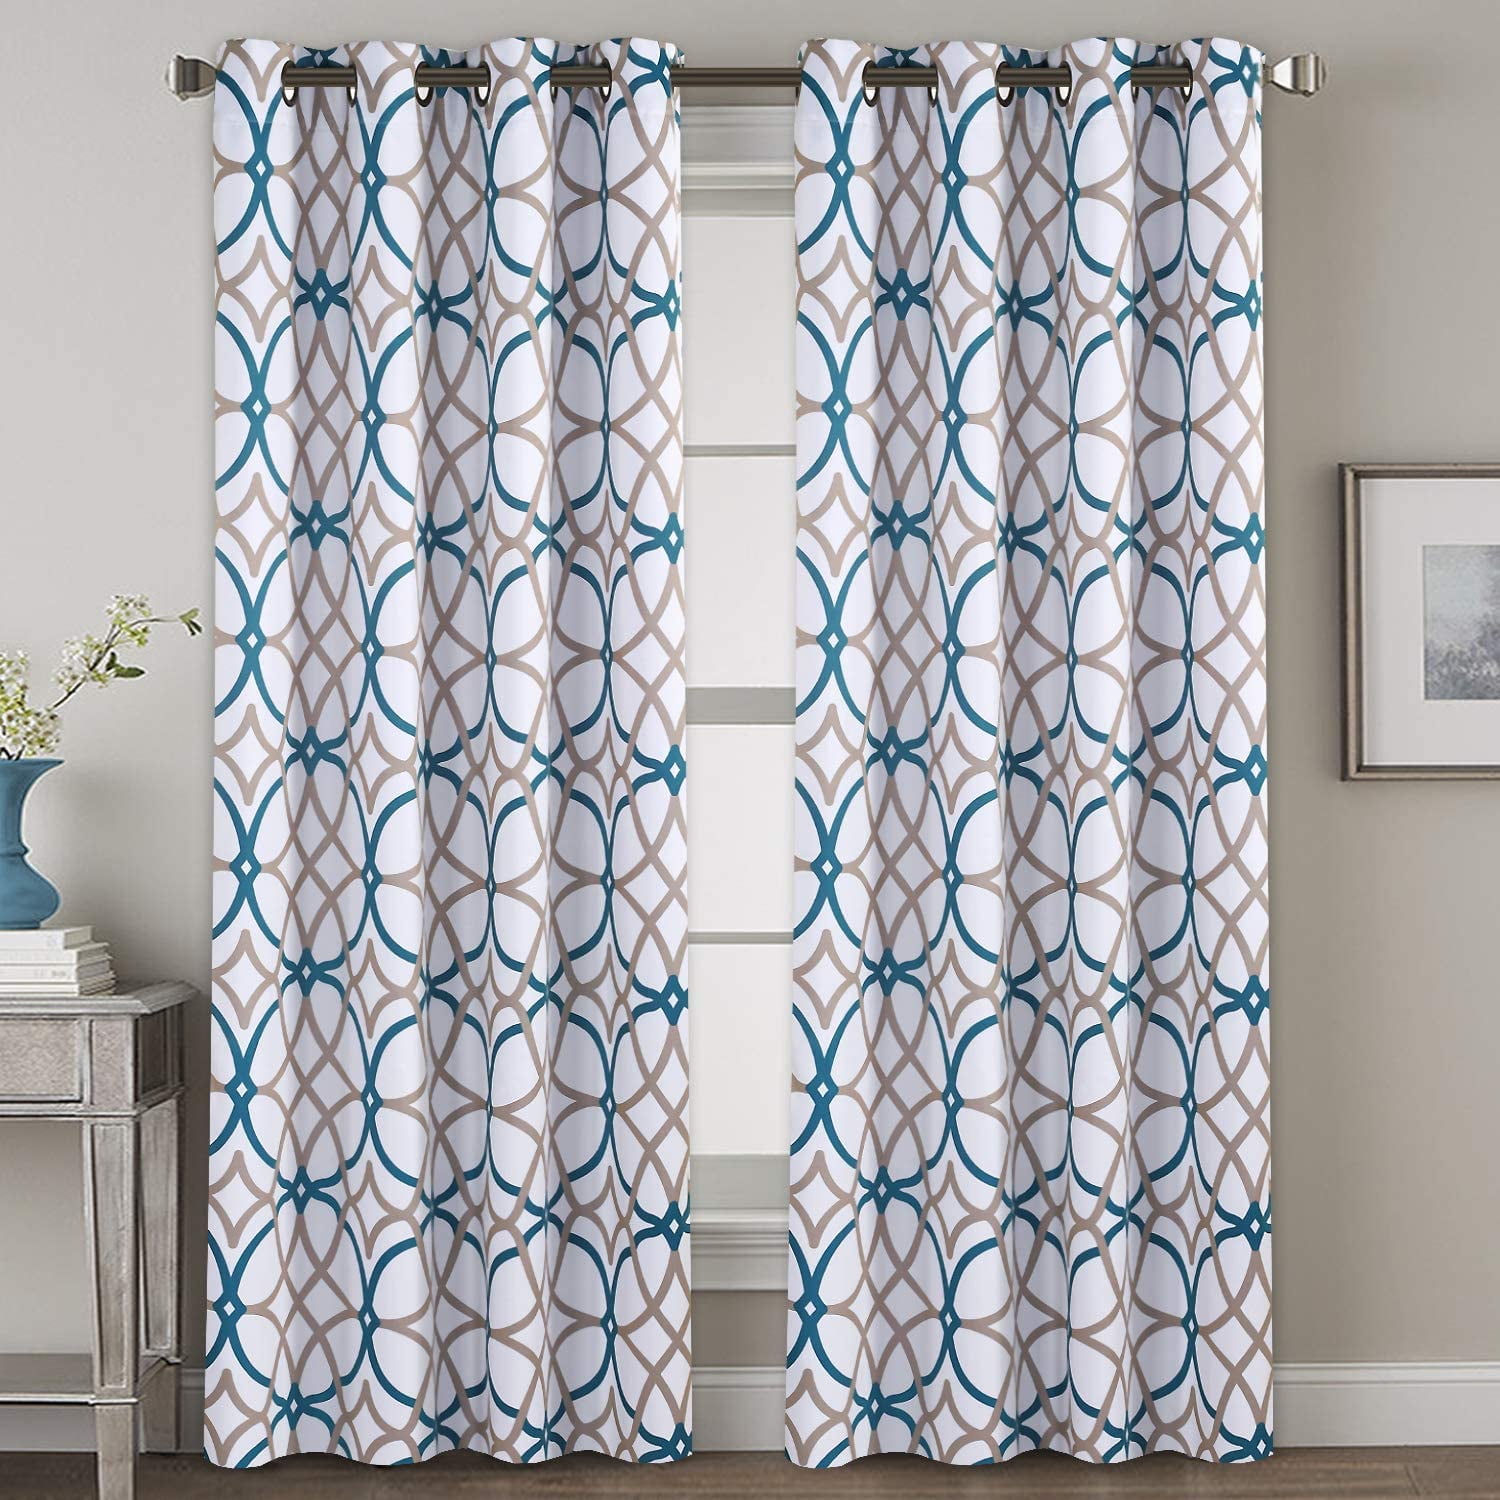 Details about   Boho Floral Cotton Linen Curtain For Living Room Window Curtains Treatmant Drape 